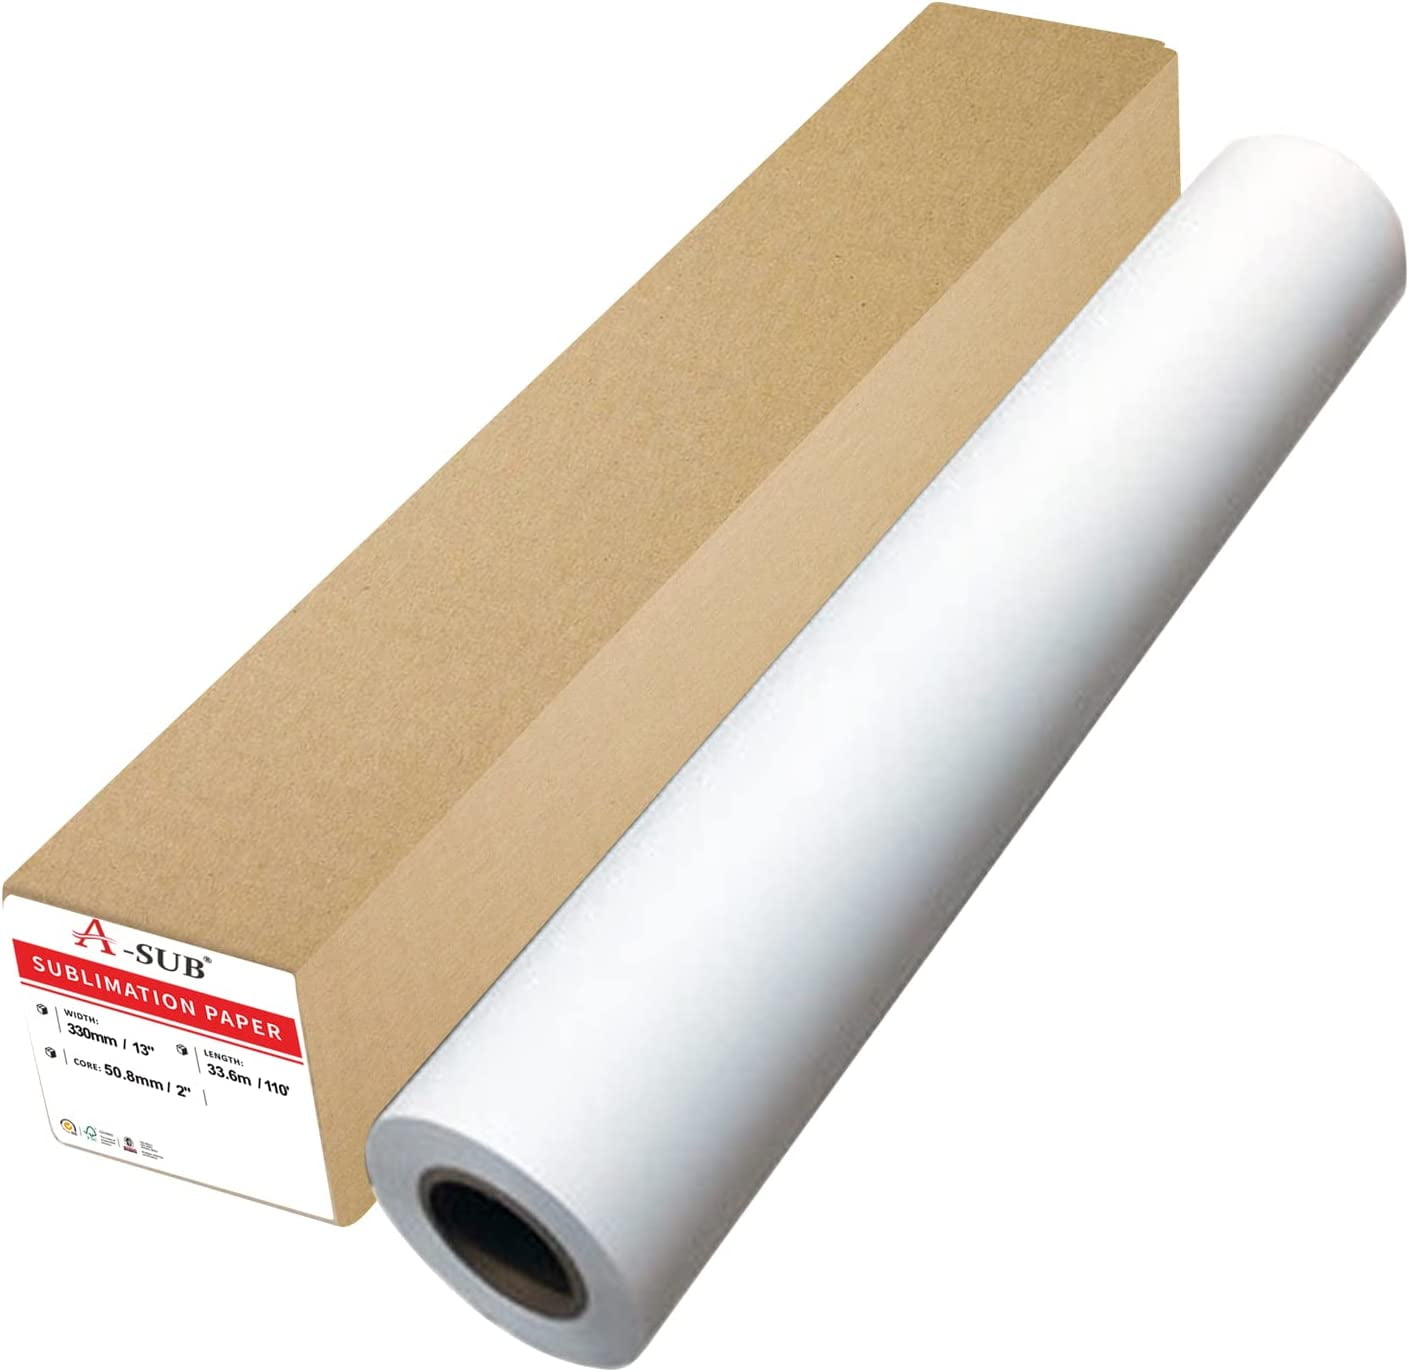 Kustom Kreationz Wholesale Sublimation Paper Sizes: 8.5x11, 8.5x14